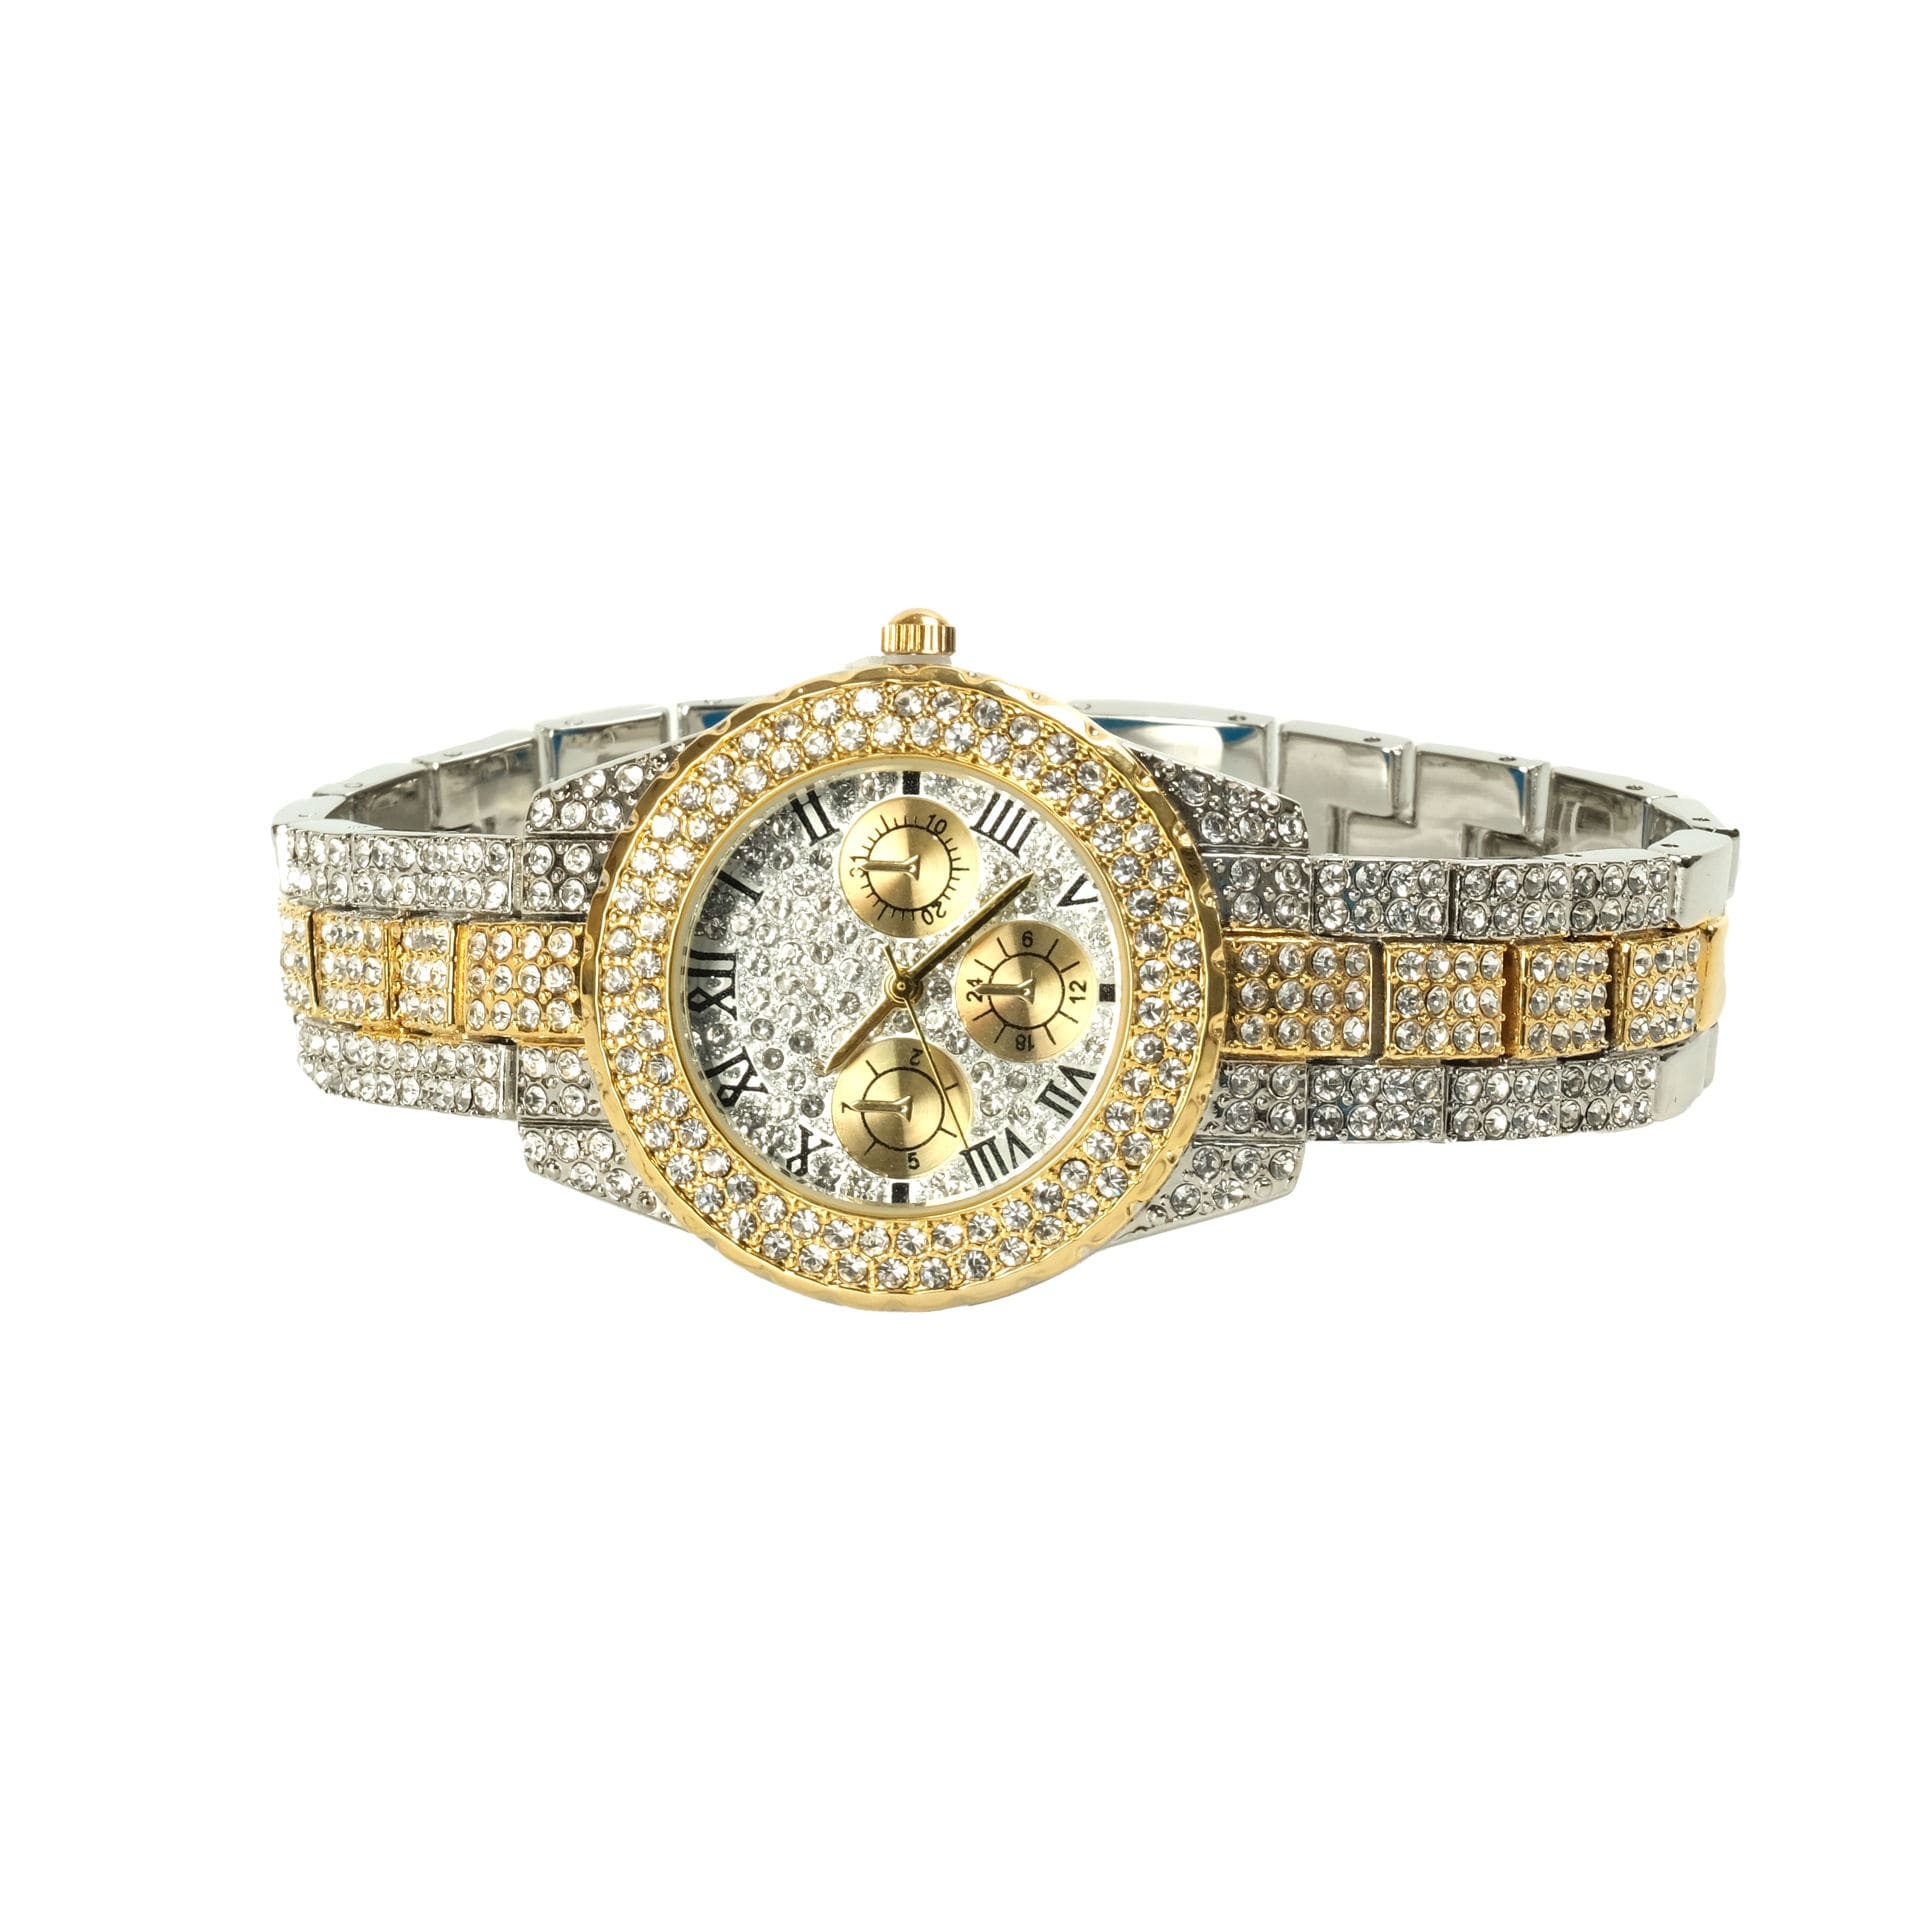 Roseberys London | Baume & Mercier. An 18ct gold quartz bracelet